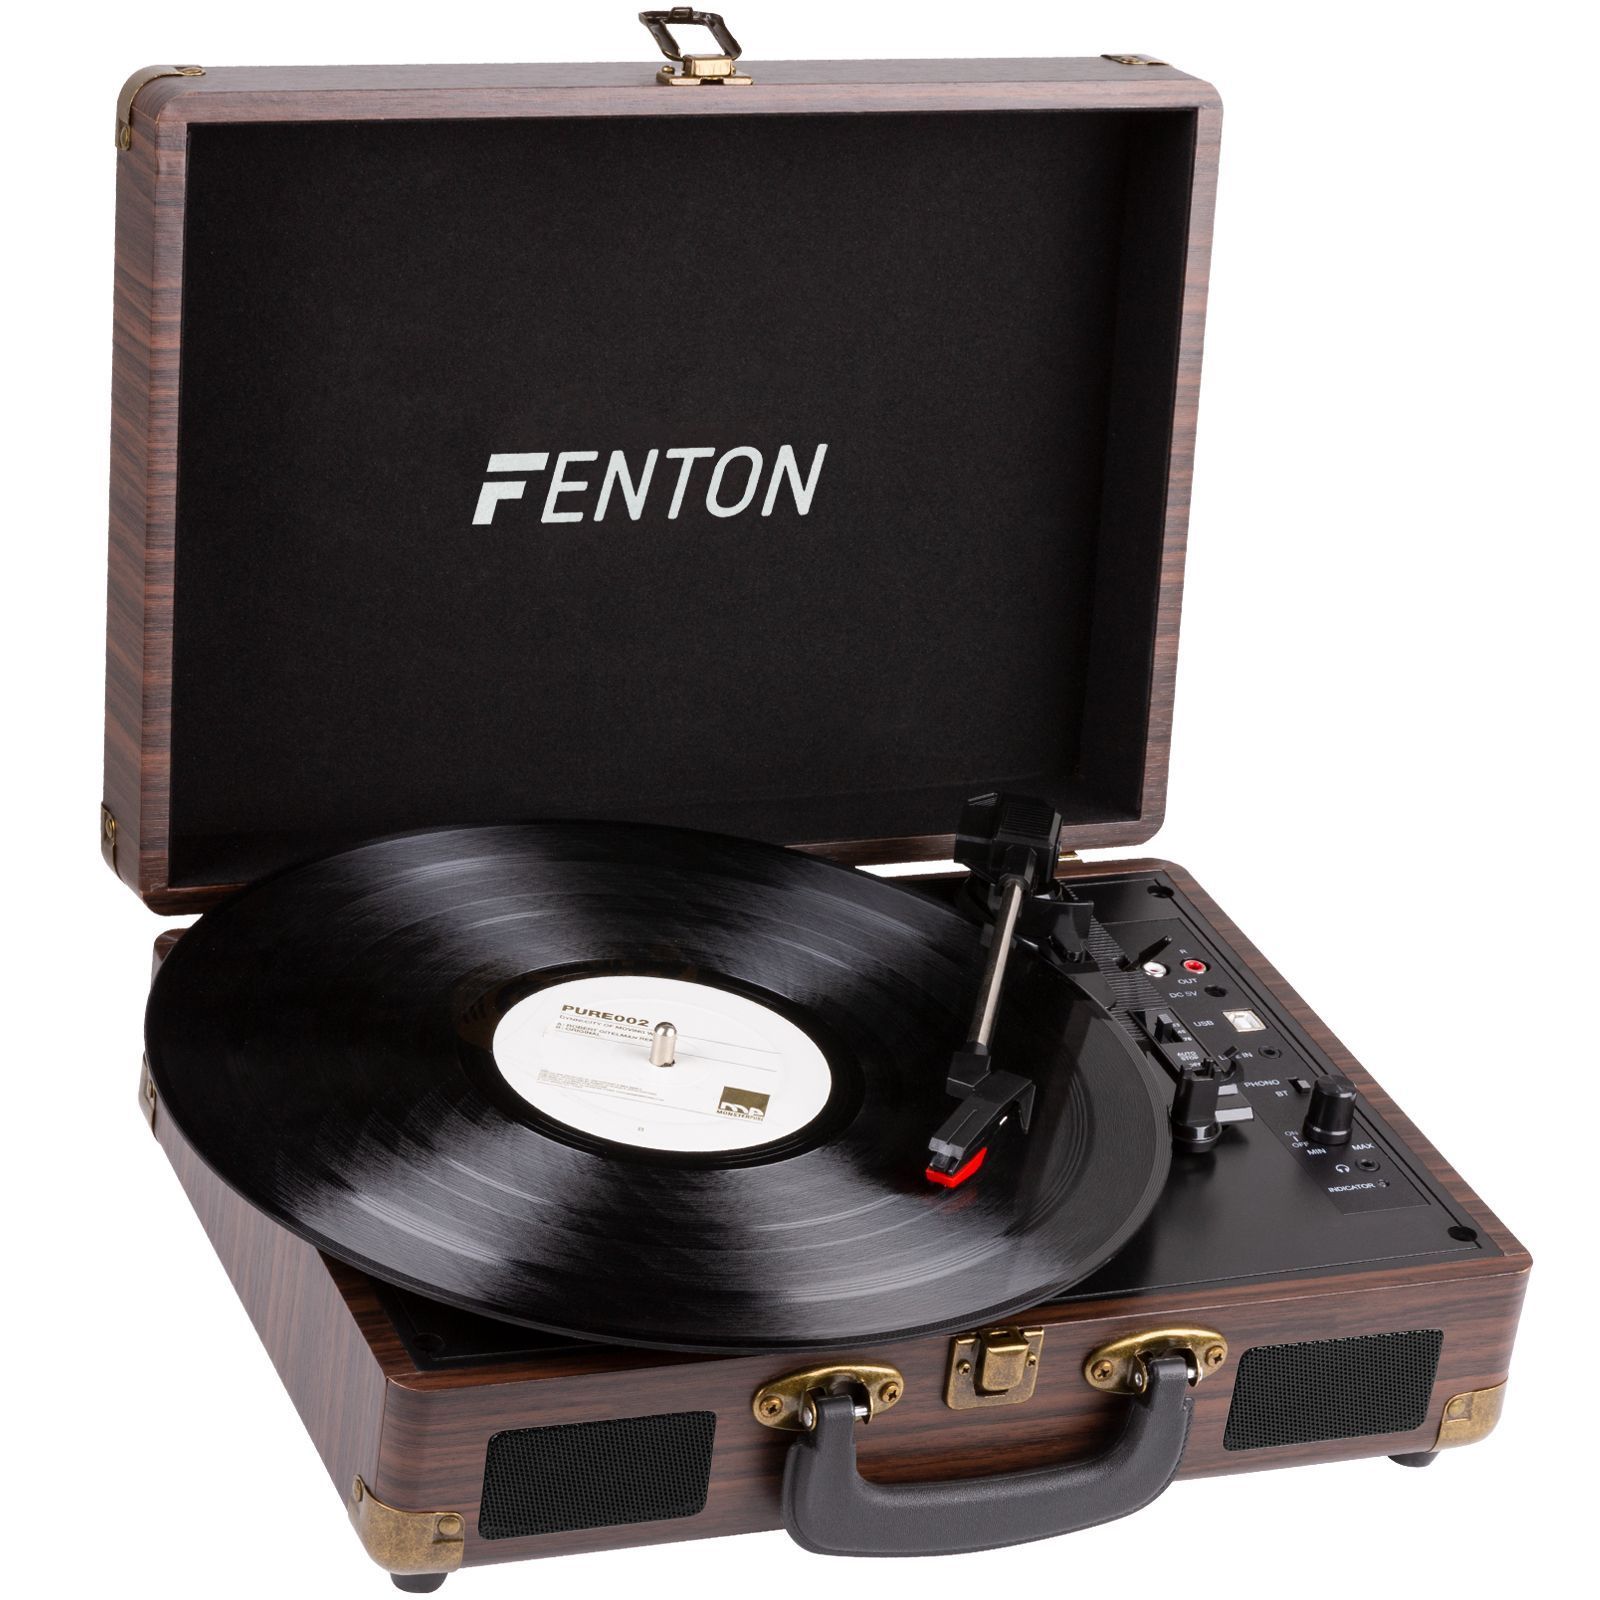 Fenton RP115B retro skivspelare med Bluetooth och USB - Trä design